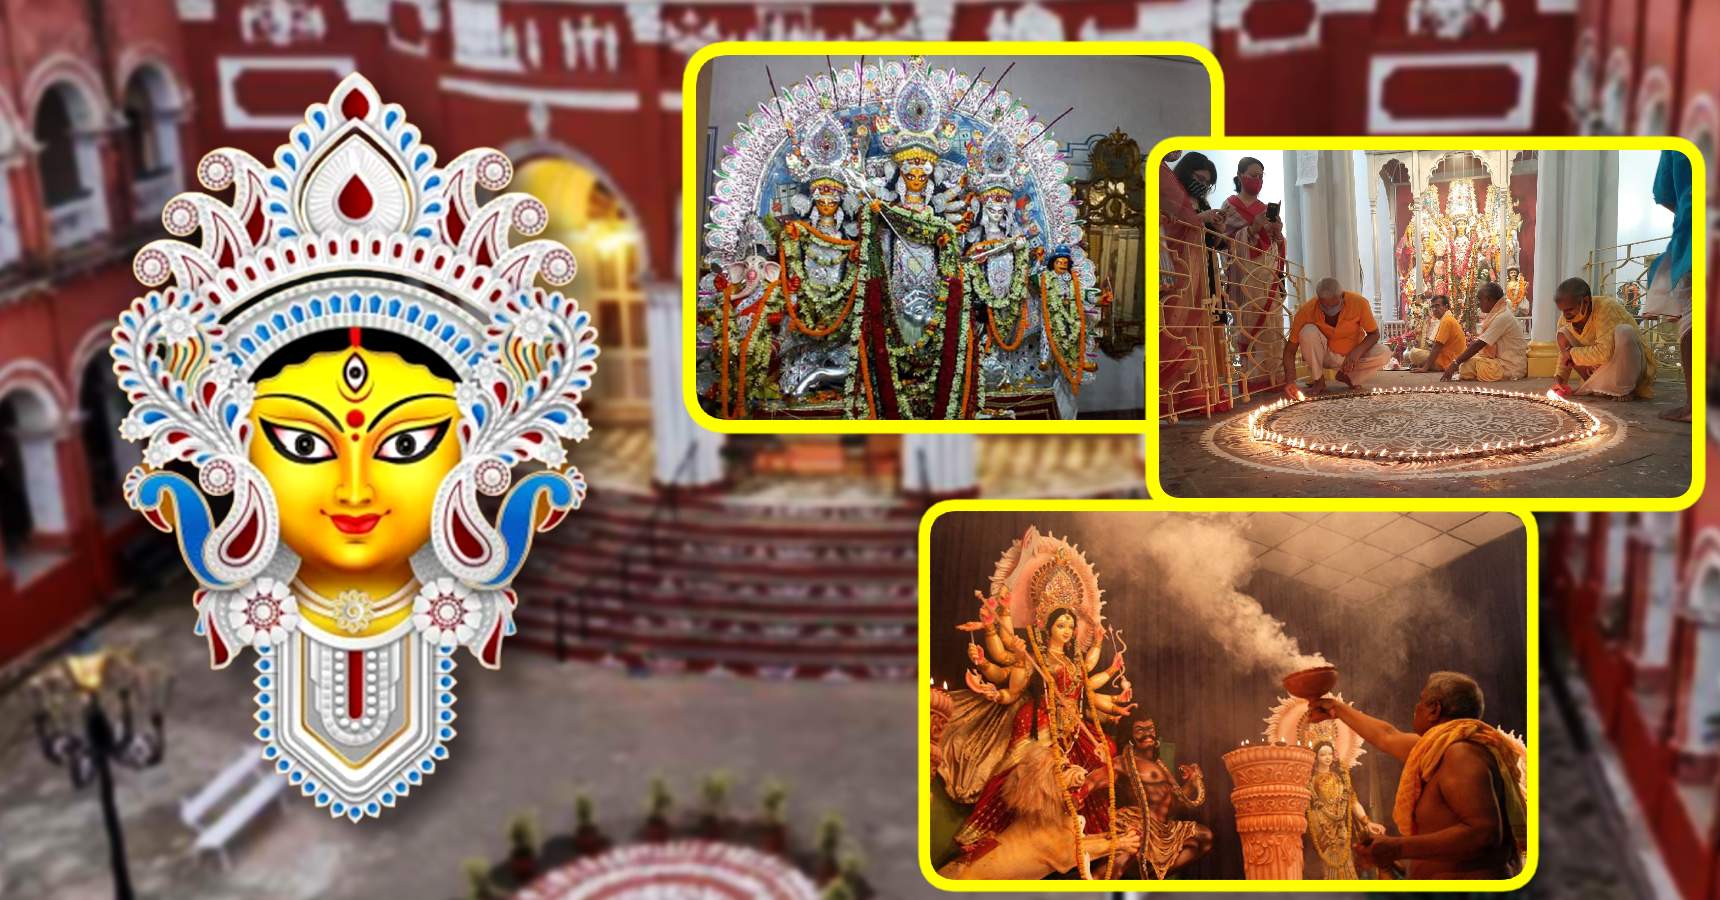 visit Chhatu Babu Latu Babu Thakurbari during Durga Puja this year